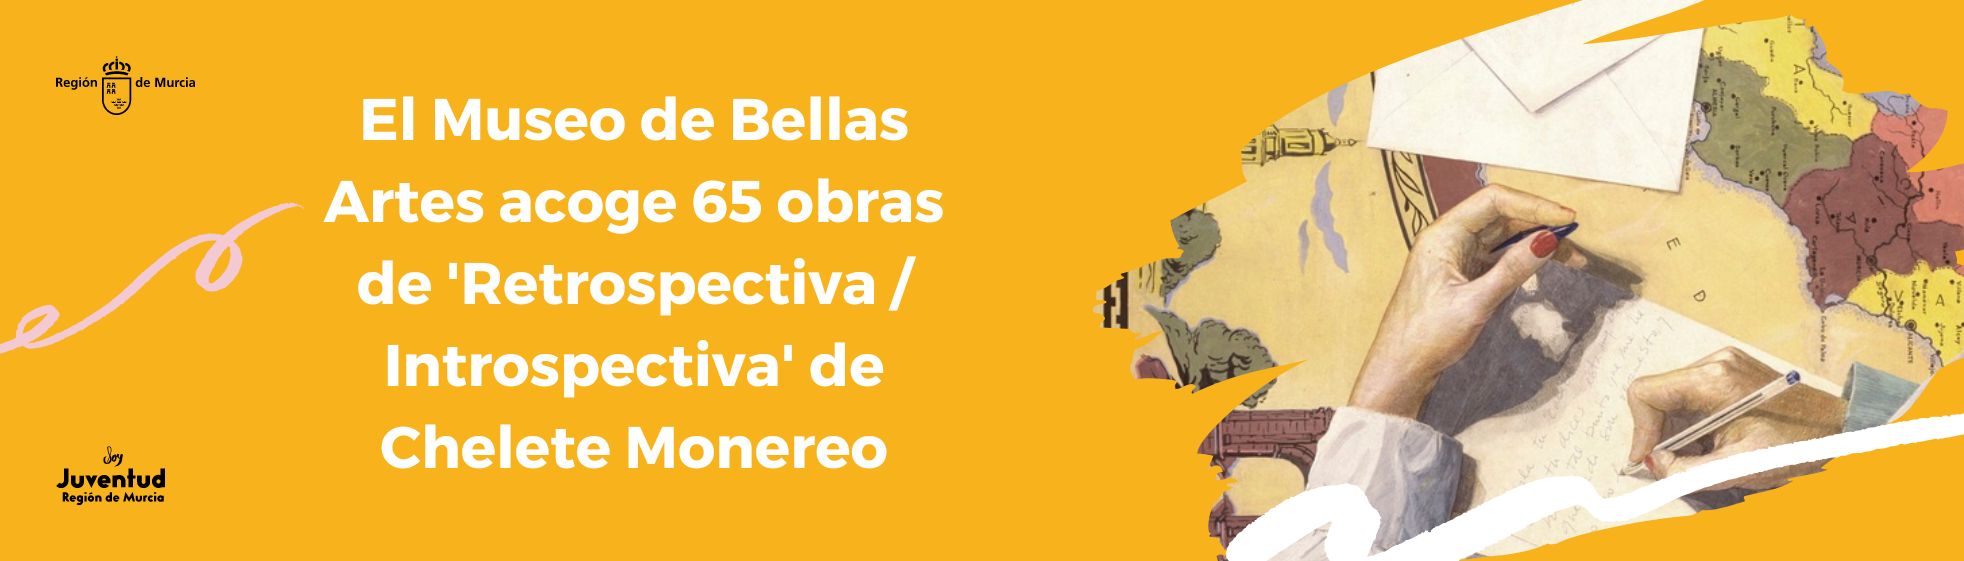 El Museo de Bellas Artes acoge 65 obras de 'Retrospectiva / Introspectiva' de Chelete Monereo